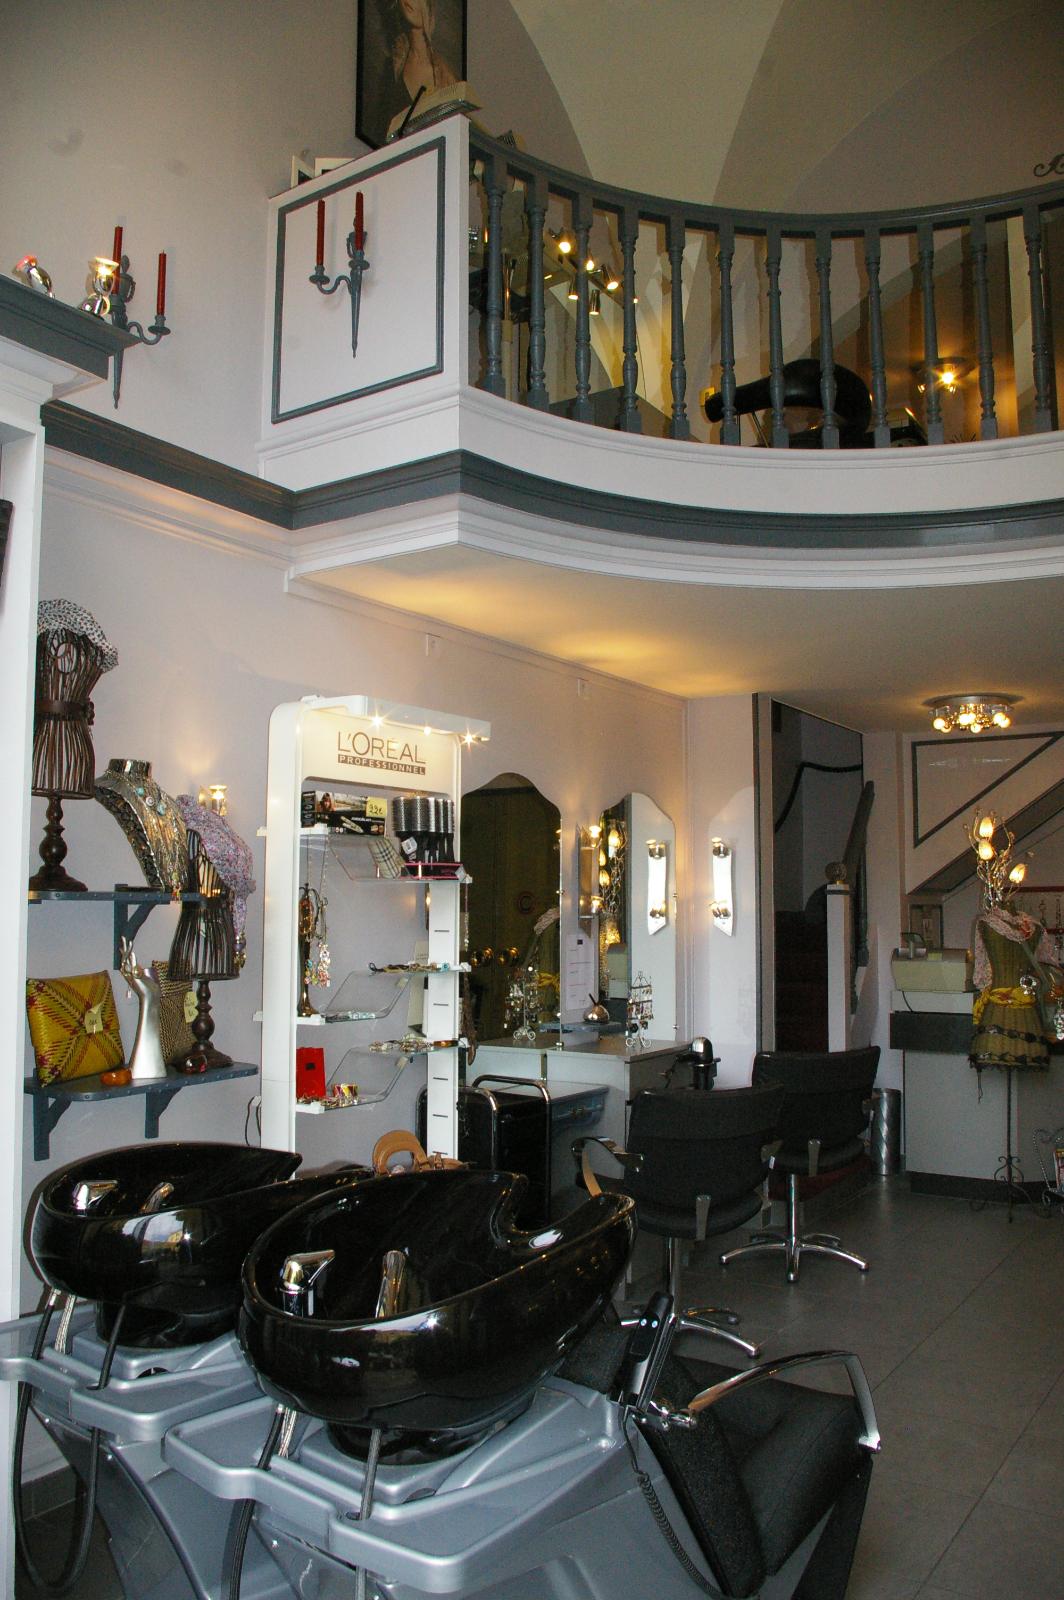 Salon de coiffure à Vichy